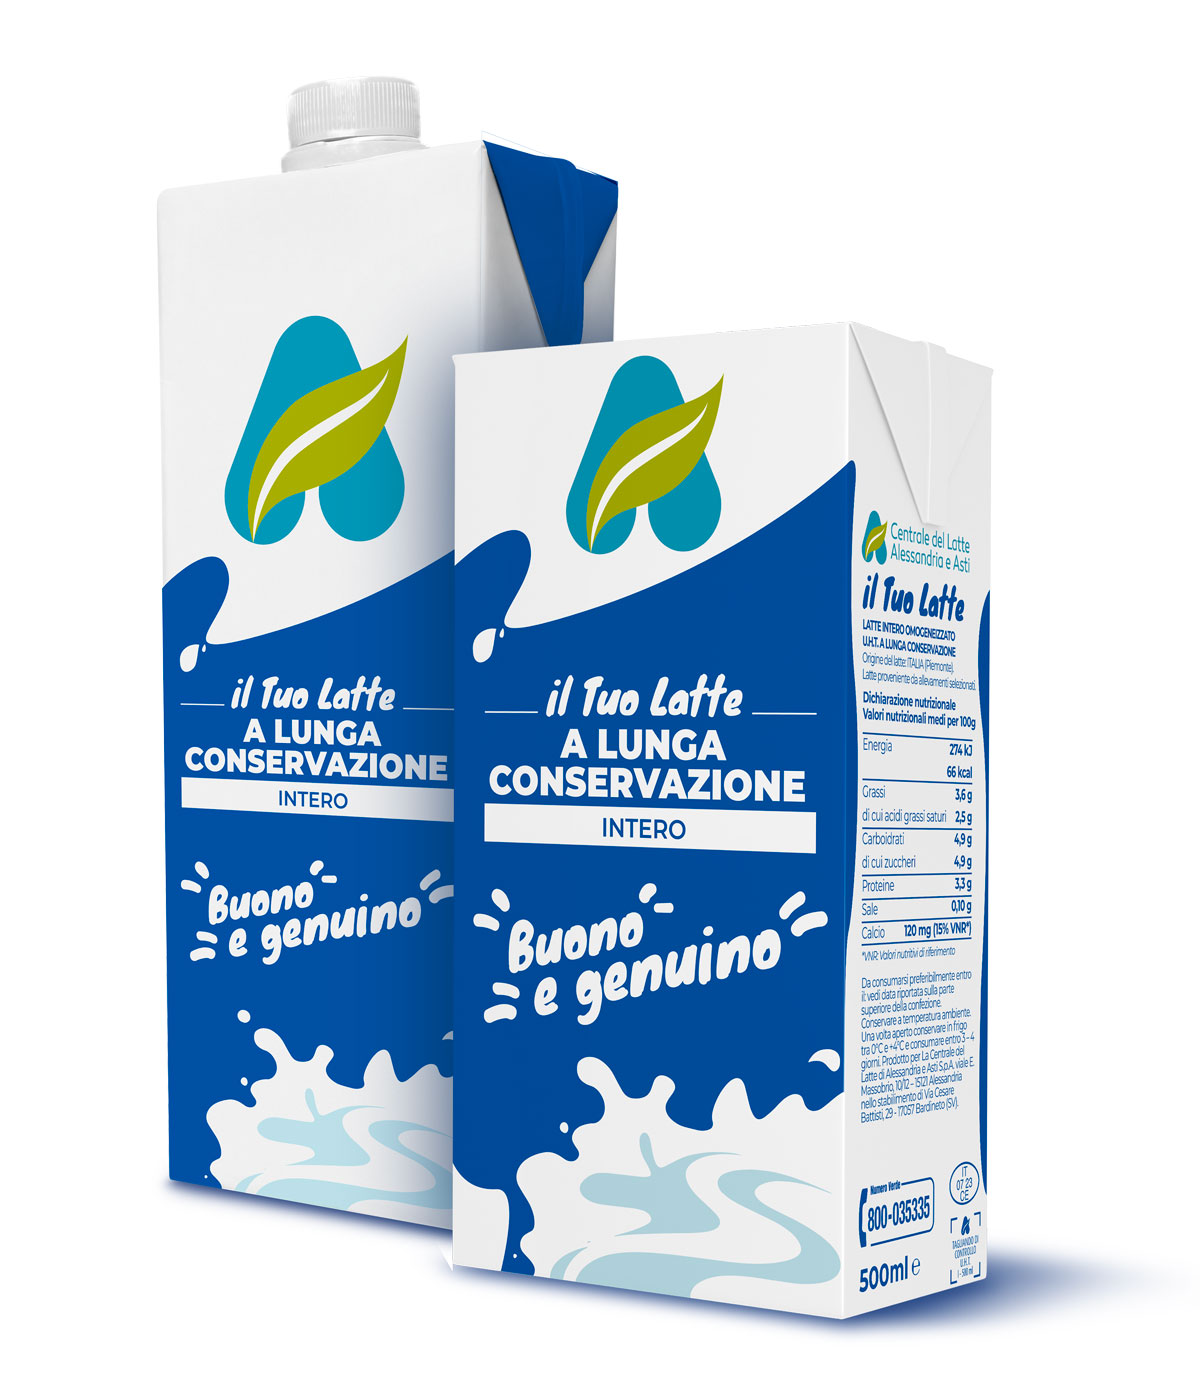 Centrale del Latte di Alessandria e Asti Packaging Latte branding